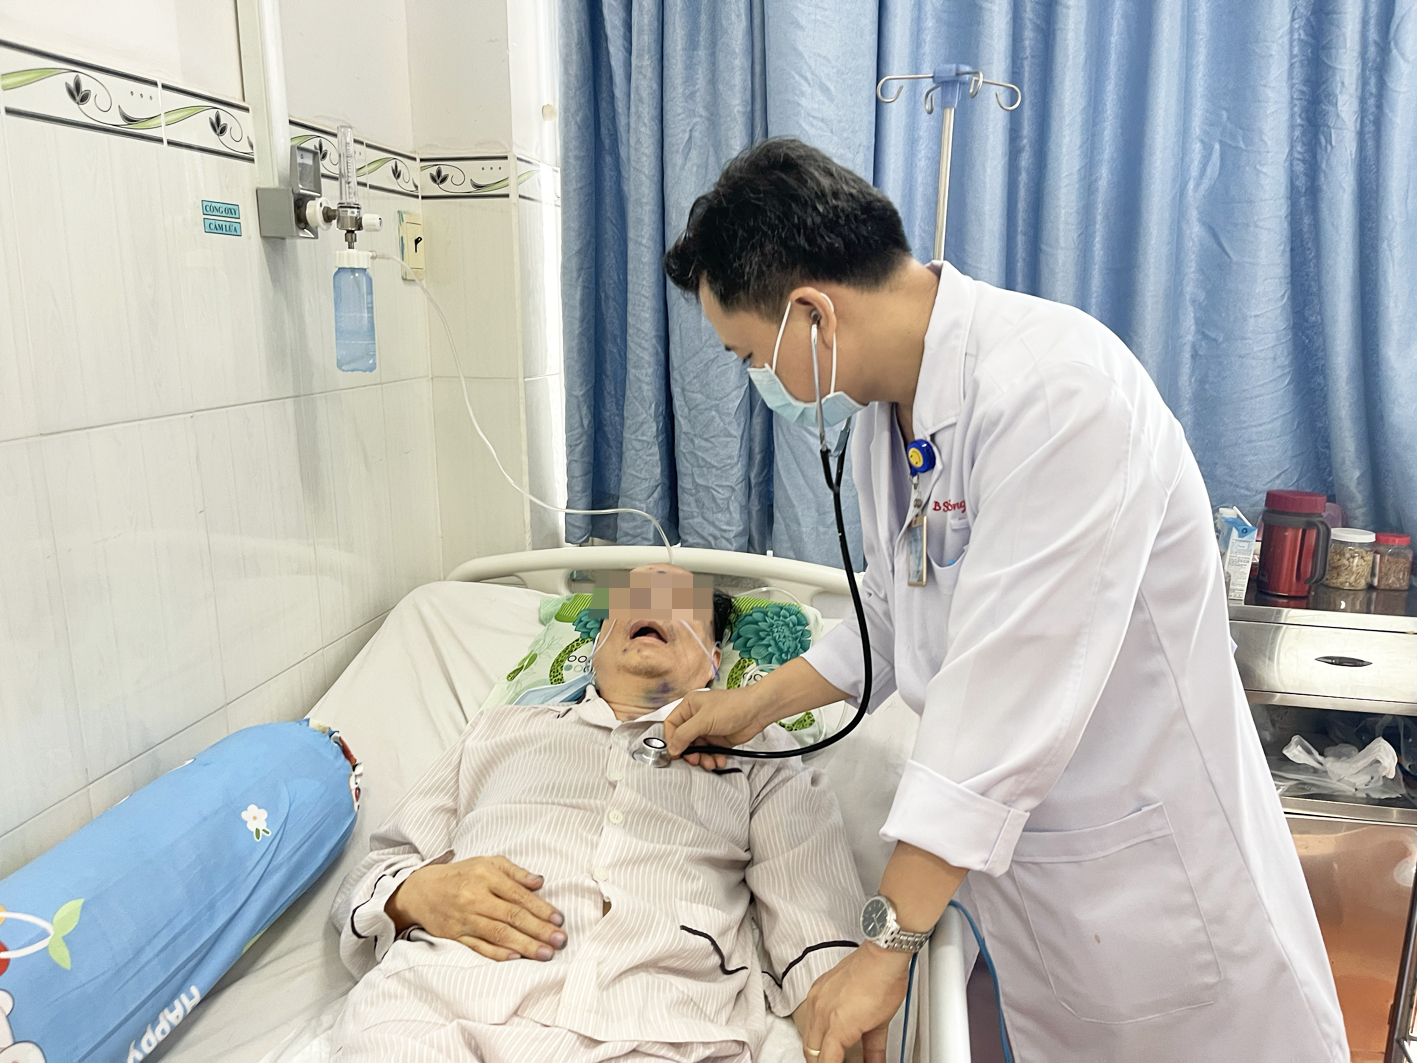 Bác sĩ Võ Trương Quý - Phó trưởng khoa Nội A Bệnh viện Bệnh nhiệt đới - khám cho một bệnh nhân lớn tuổi bị thủy đậu gây biến chứng viêm não và viêm phổi